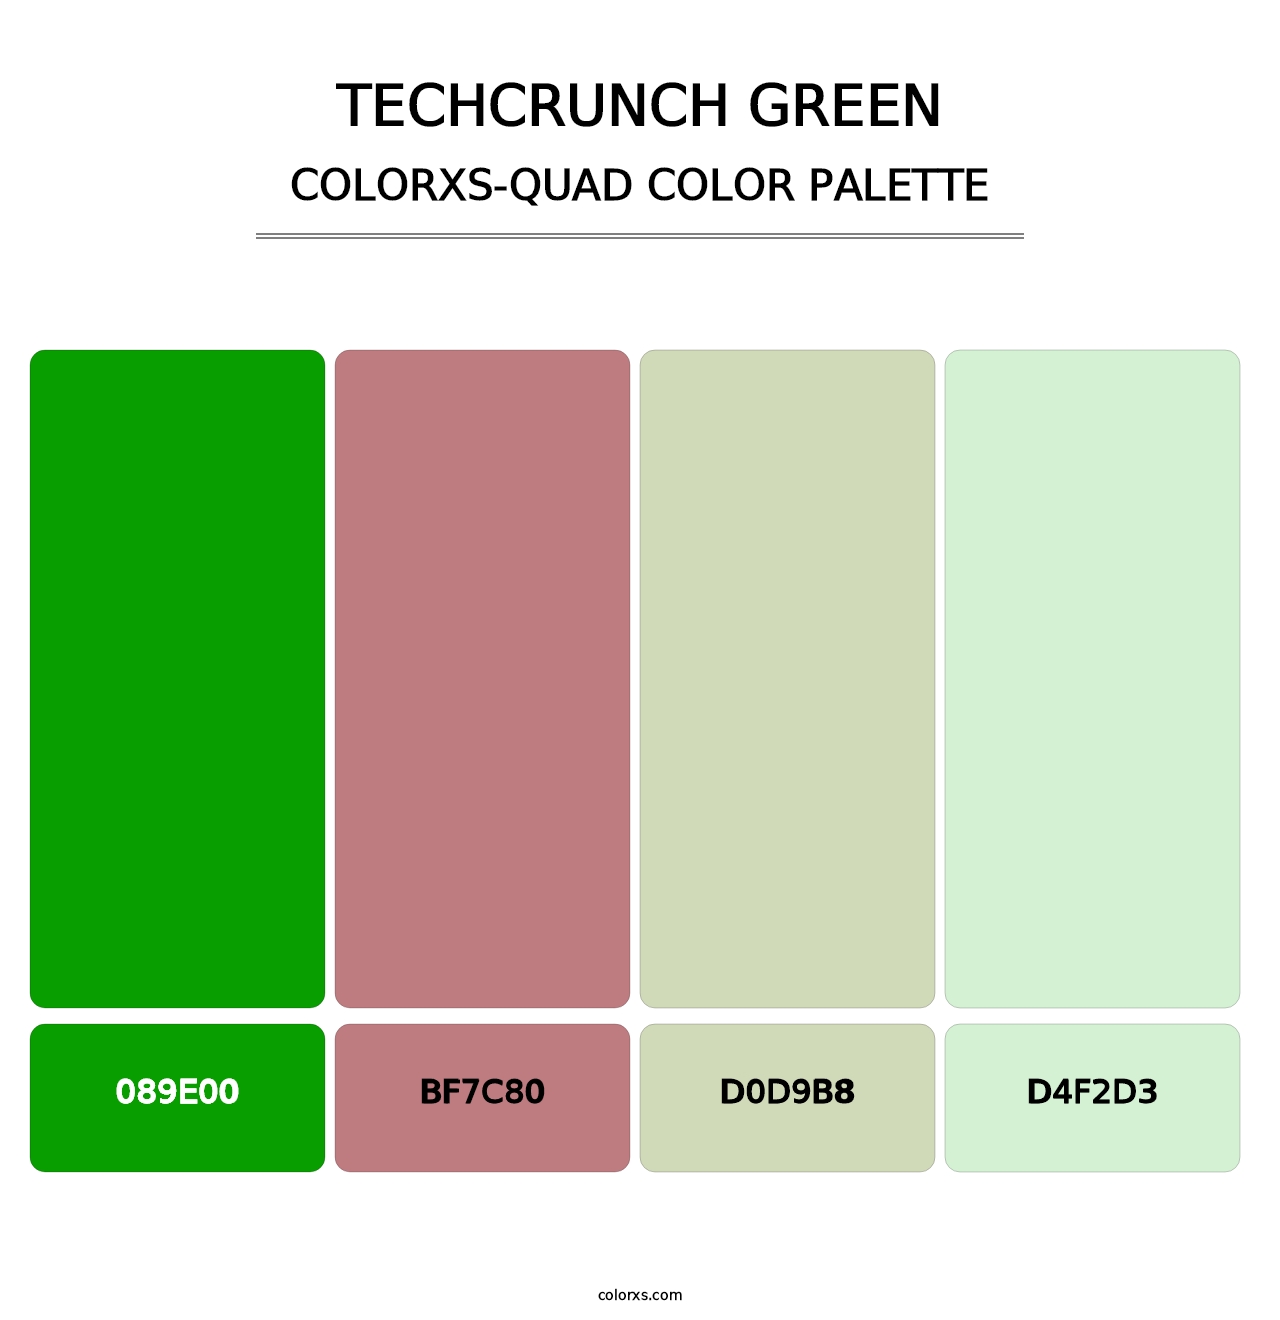 TechCrunch Green - Colorxs Quad Palette